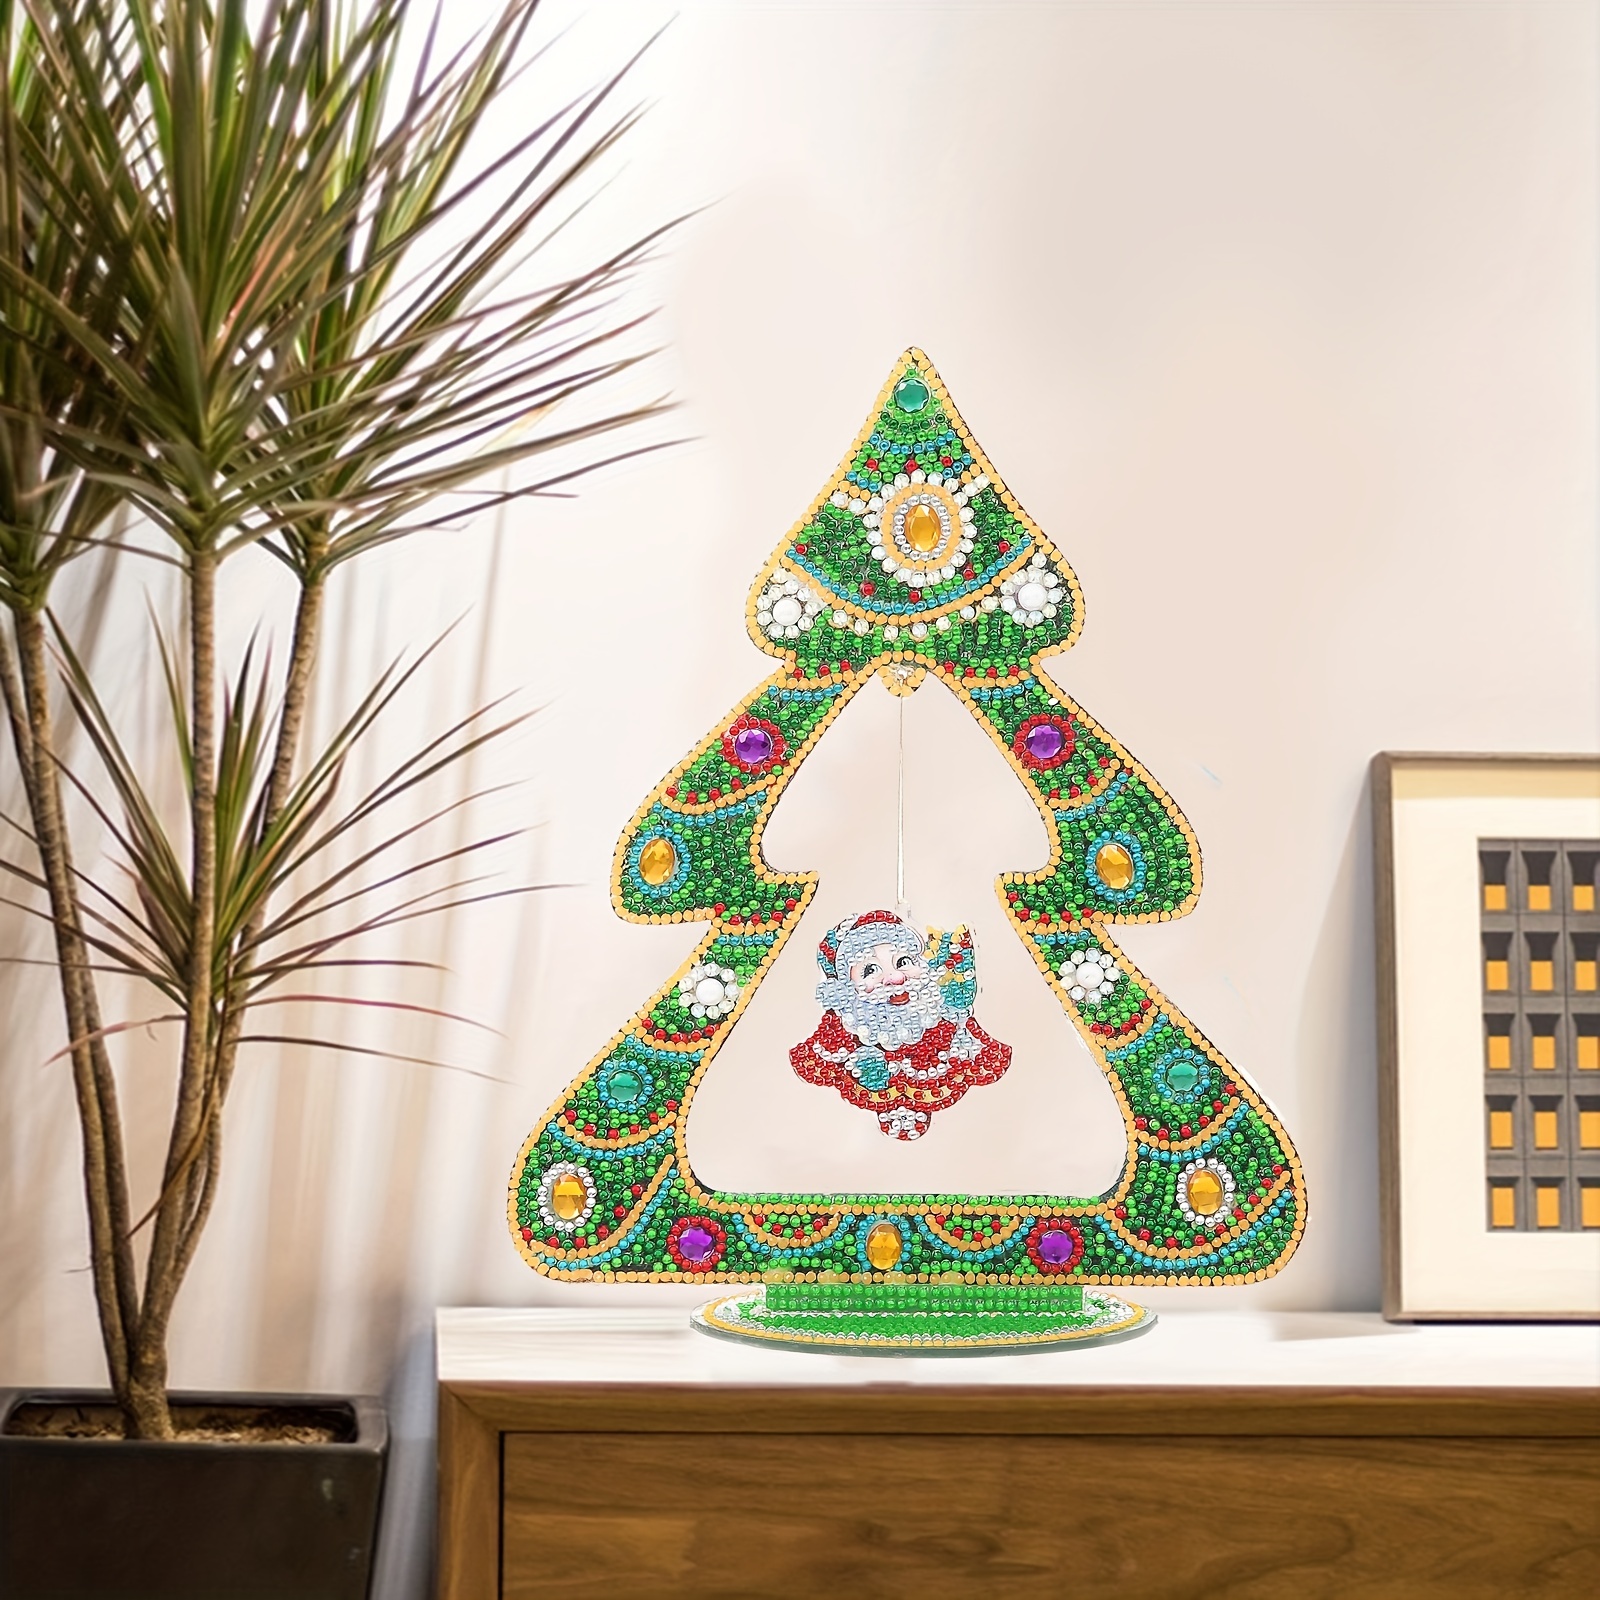 New arrival DIY Diamond Painting Kit Christmas Tree Desktop